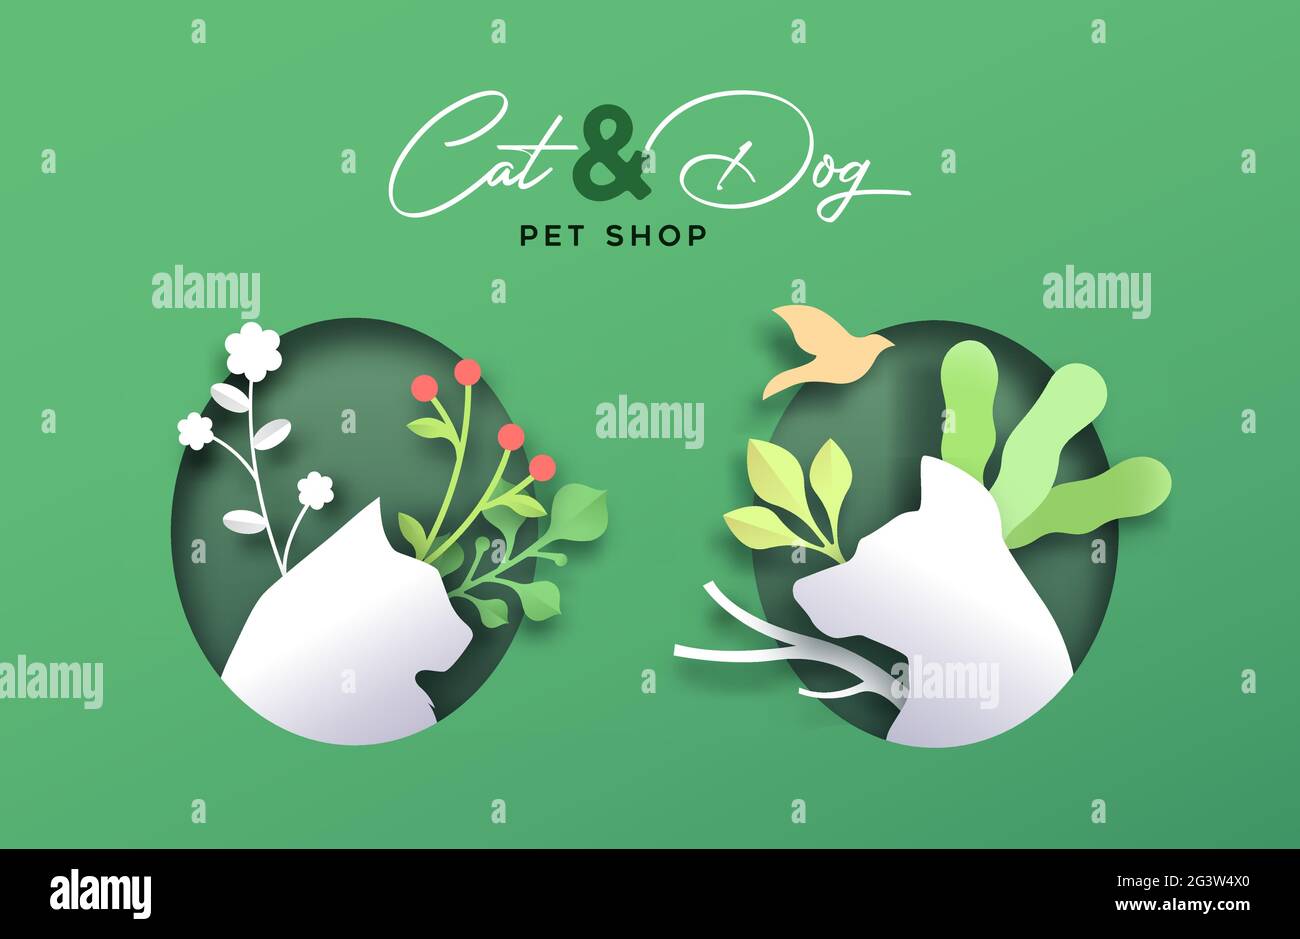 Katze und Hund PET Shop Papier geschnitten Banner Illustration von 3d-Papierschnitt Handwerk Tiere mit grünen Pflanzen Dekoration. Umweltfreundliche Haustiere Nahrung oder Tierarzt Stock Vektor